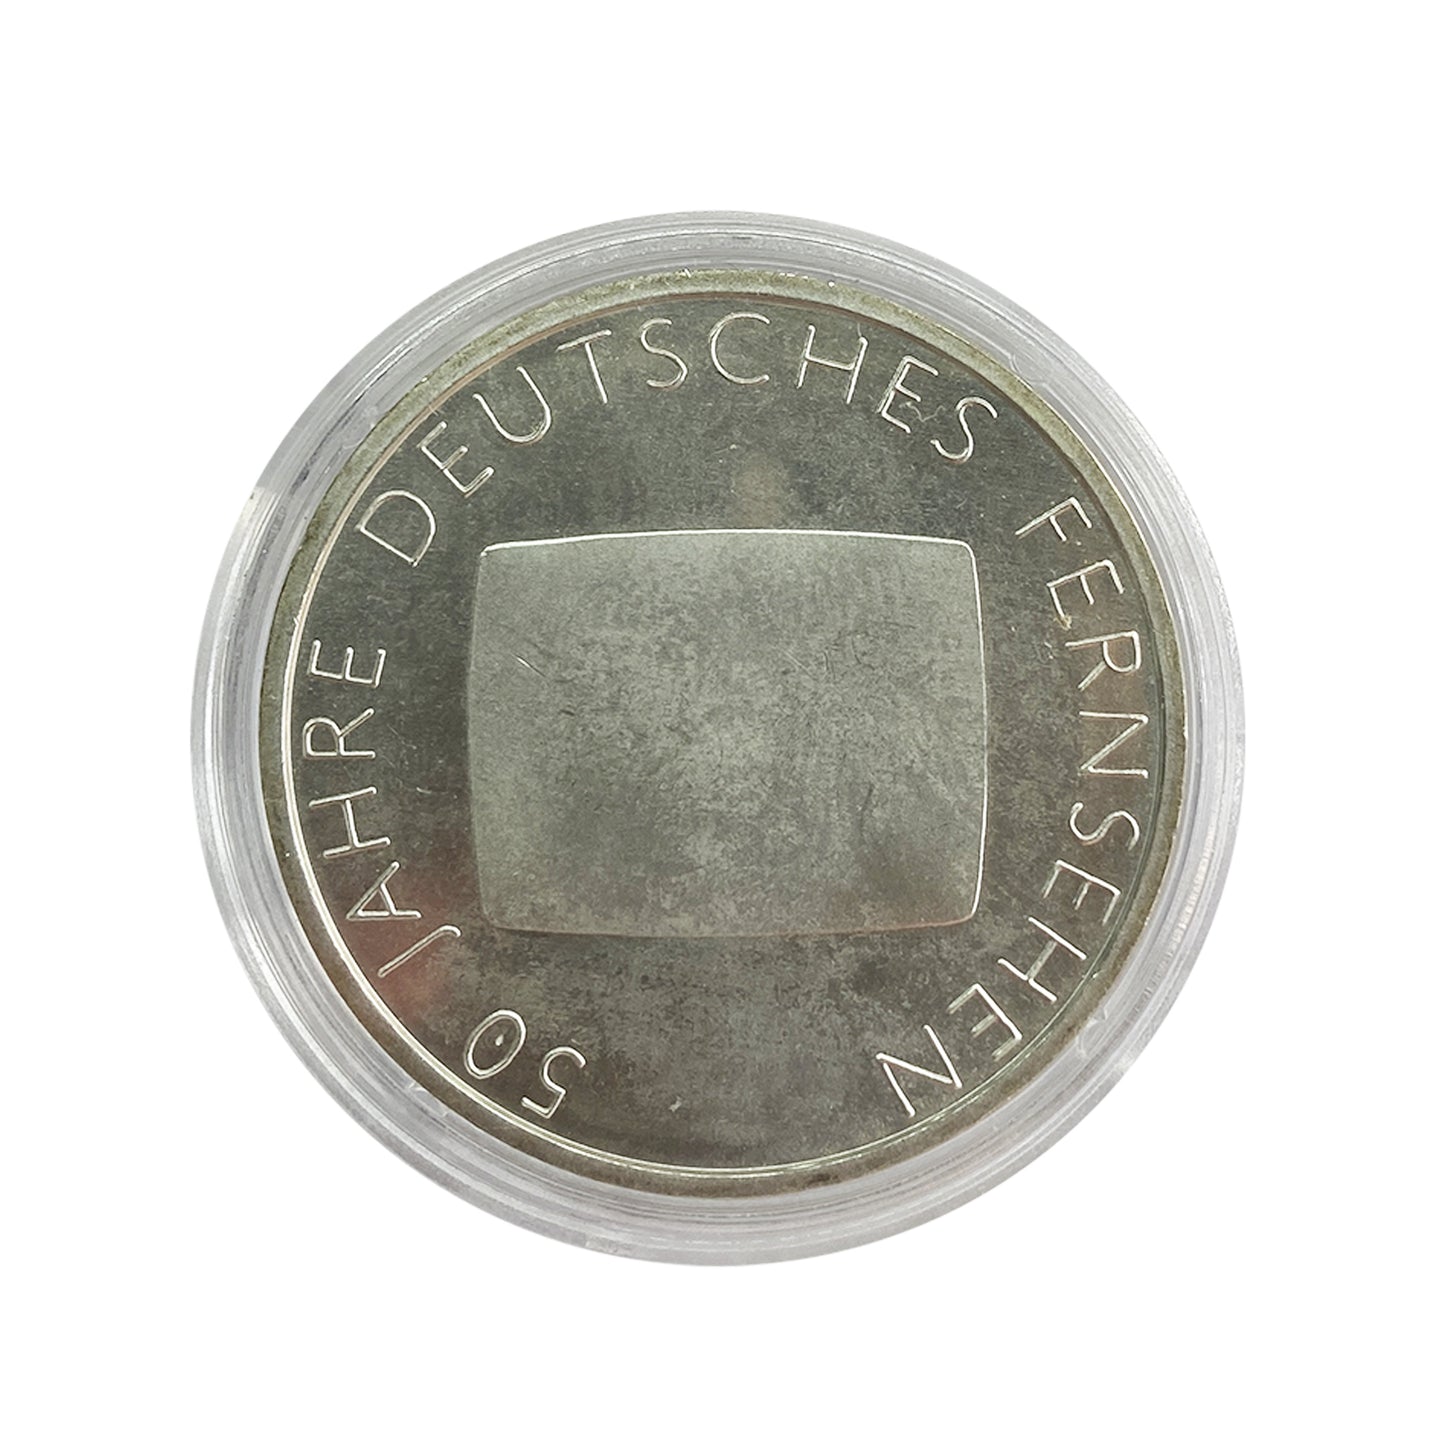 Alemania - Moneda 10 euros plata 2002 - 50 Años de la televisión alemana